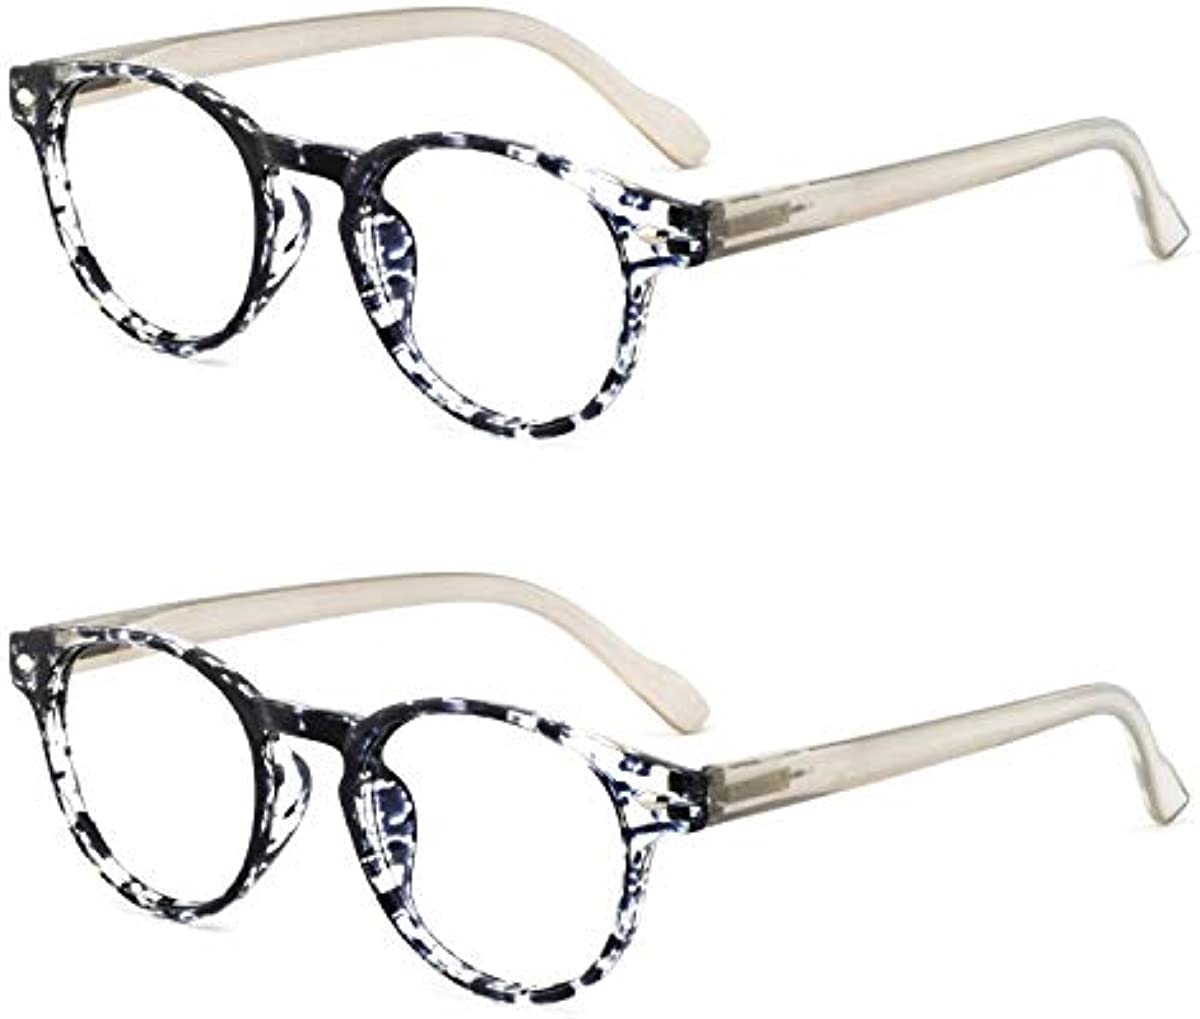 OCCI CHIARI 2 Pack Reader Lightweight Designer Plastic frame Stylish Reading Glasses For Women(Black,1.25)